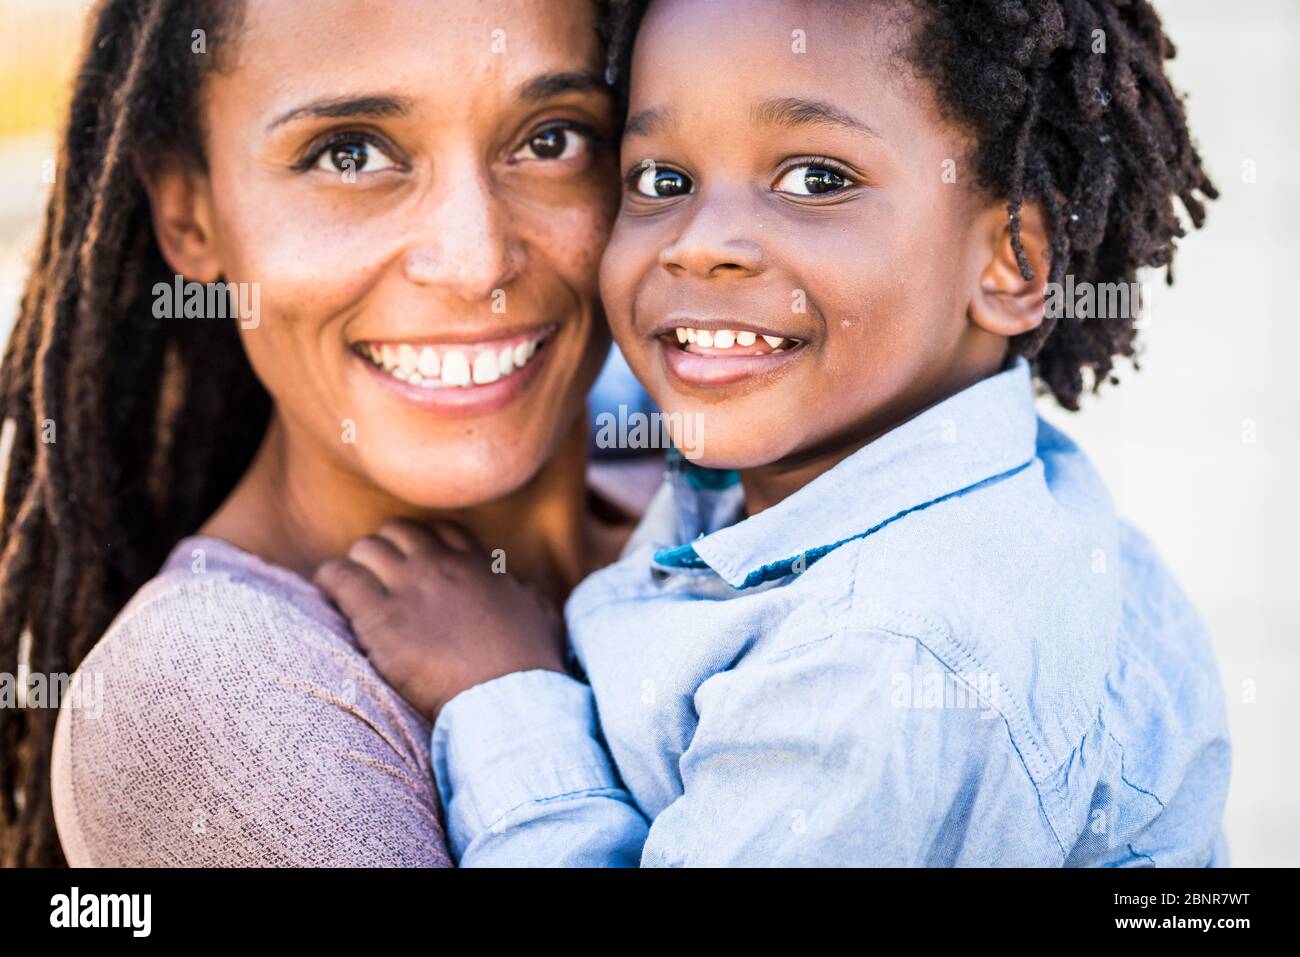 Porträt des Familienpaares Mutter und Sohn schwarz afro ethnische Rasse Lächeln und Blick auf die Kamera - Konzept der Vielfalt und alleinerziehende Mutter mit kleinen Kindern - Glück und Freude Konzept mit Liebe - Fokus auf Kinder Augen Stockfoto